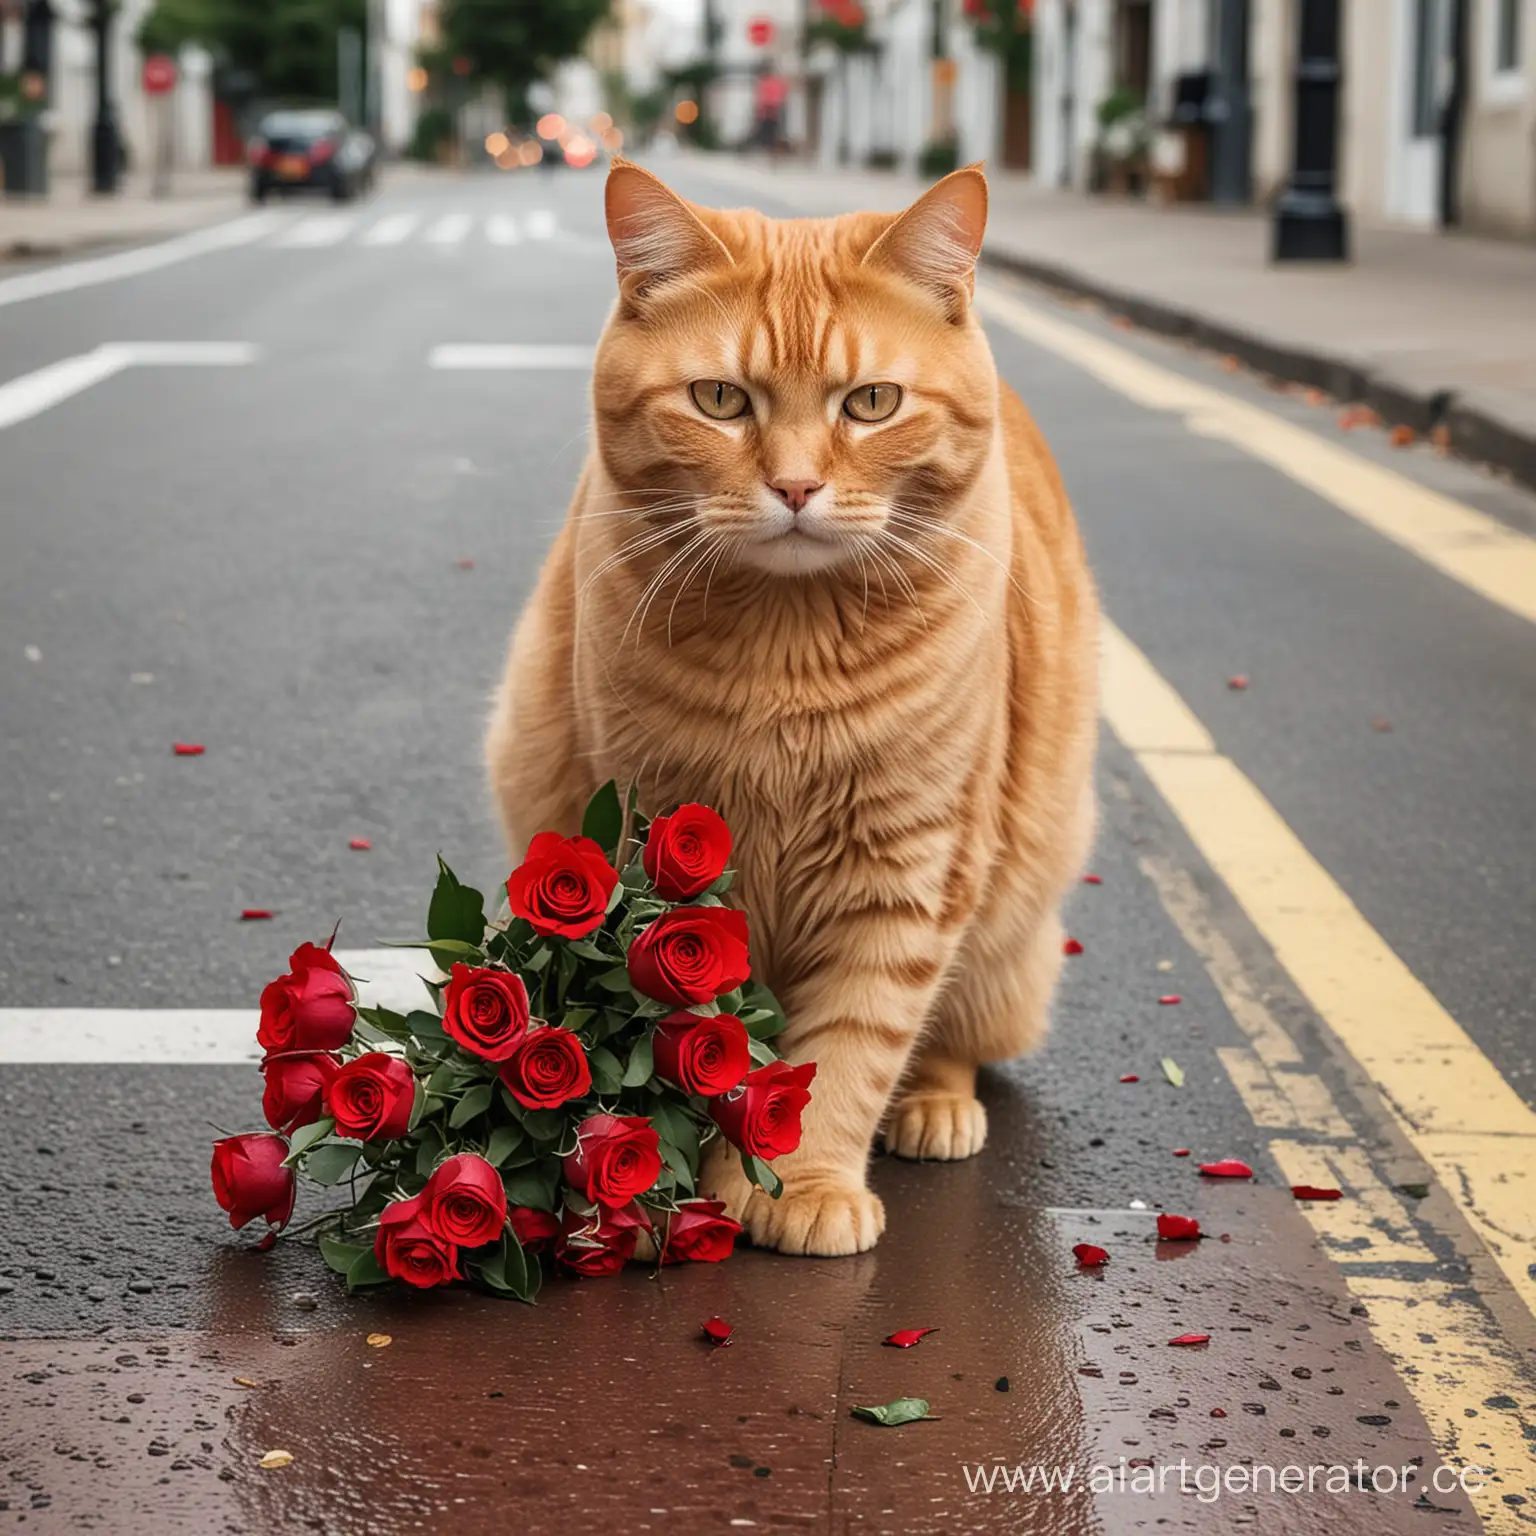 толстый рыжий кот с букетом красных роз переходит дорогу по пешеходному переходу